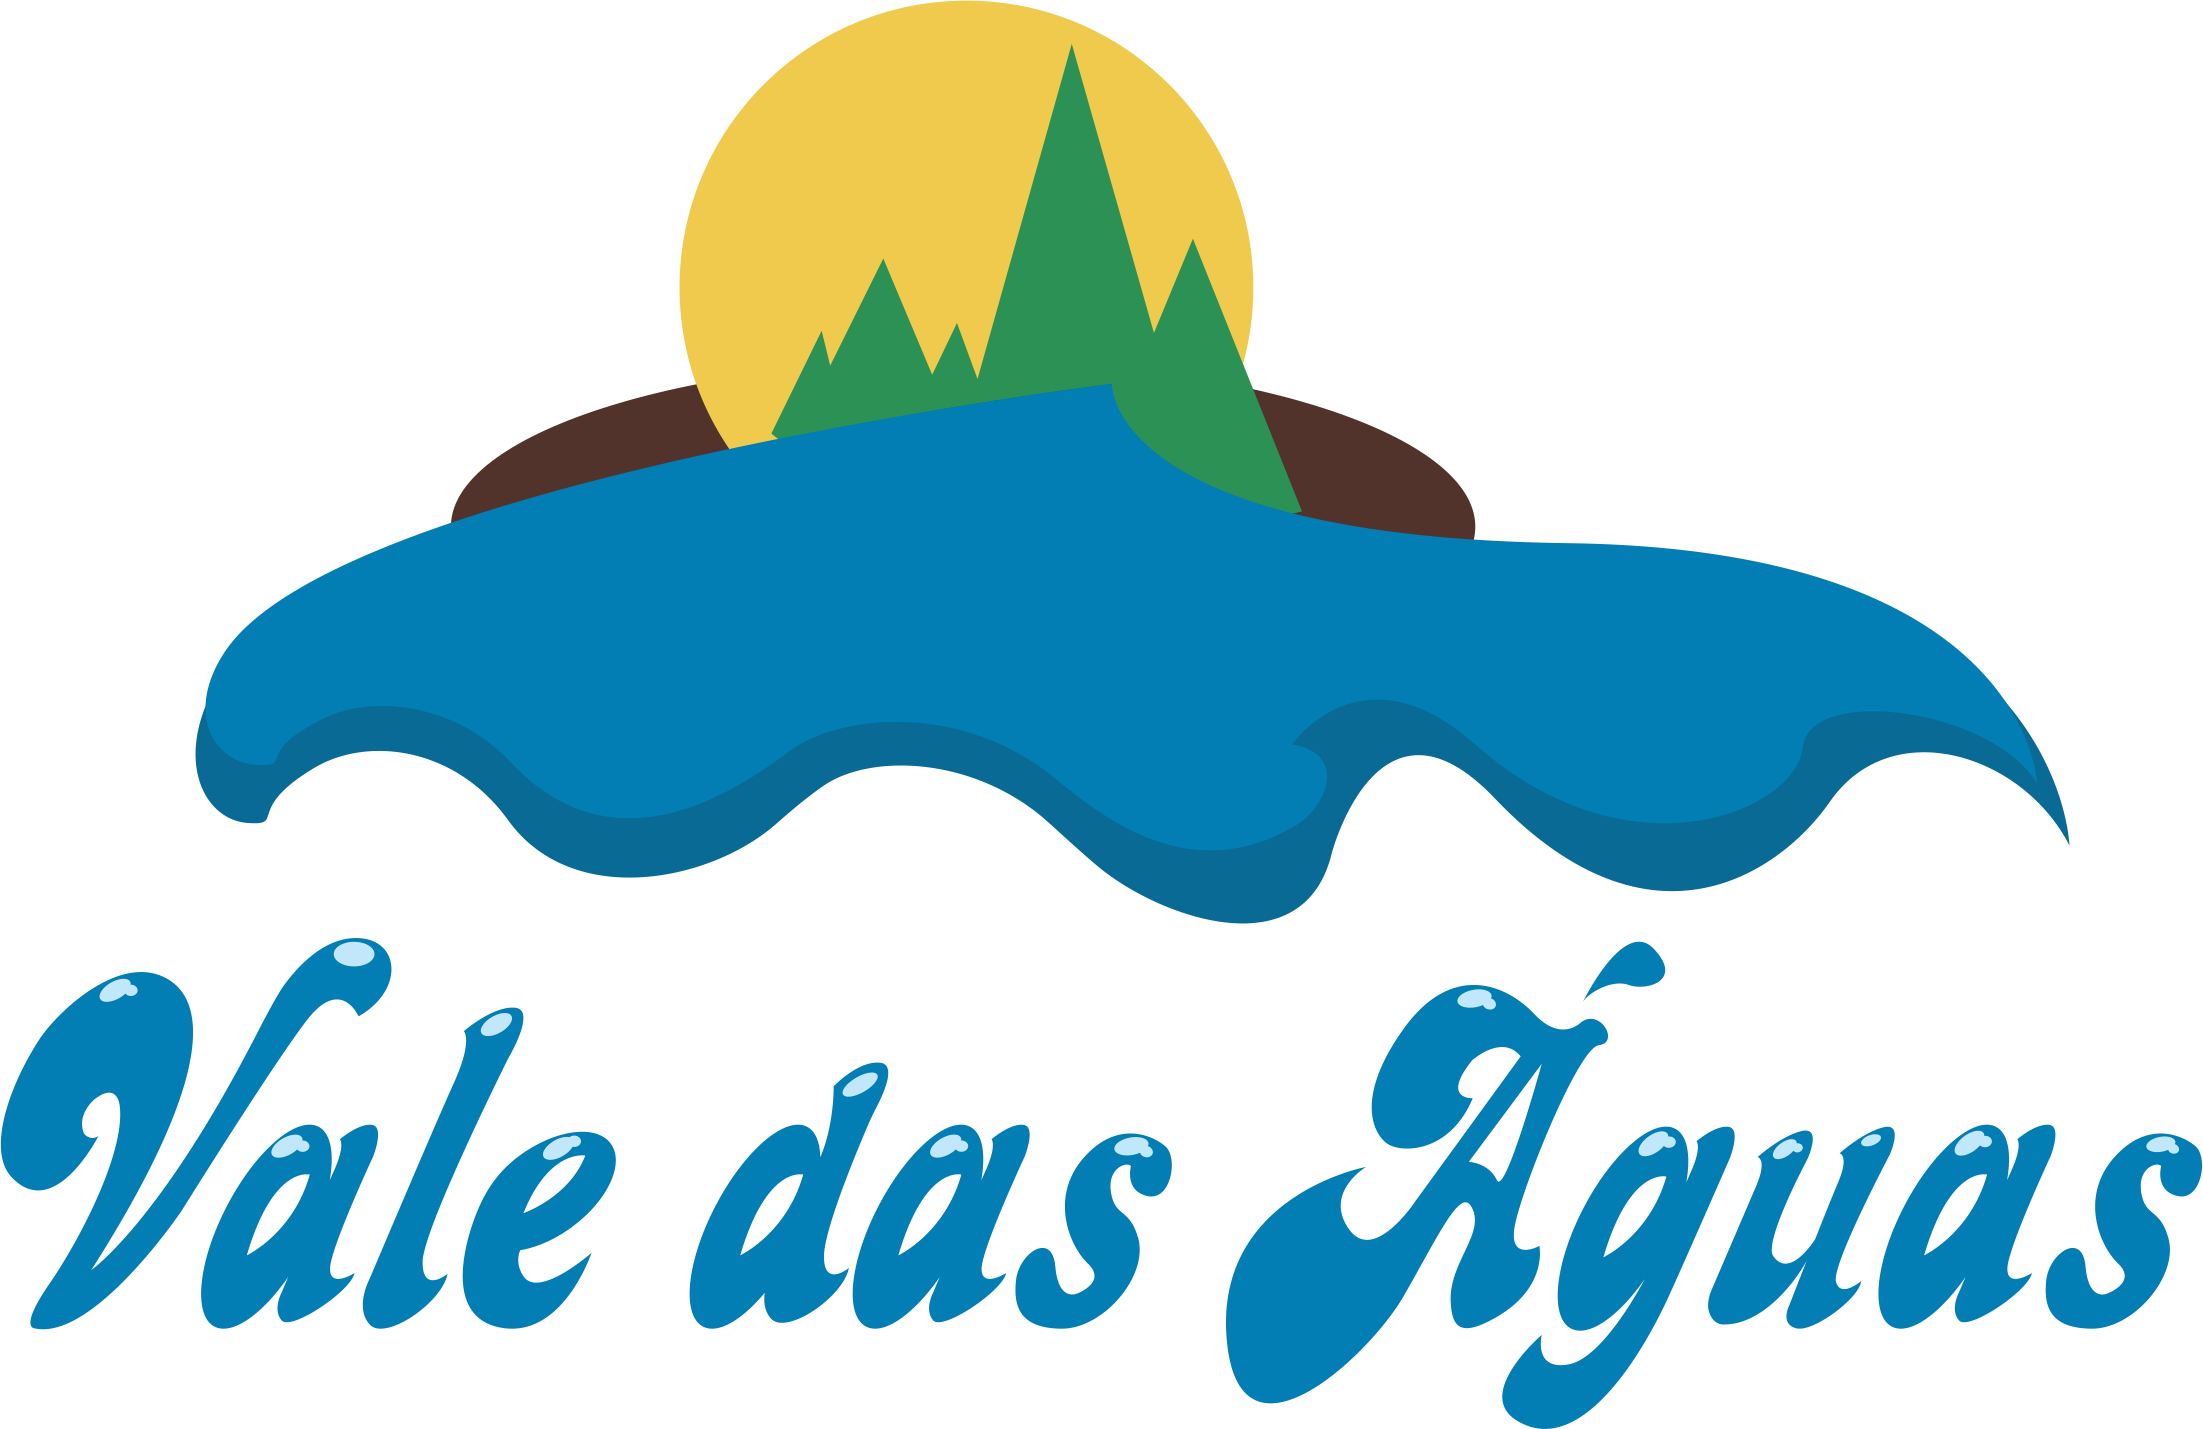 Vale das Aguas - Logo 2018